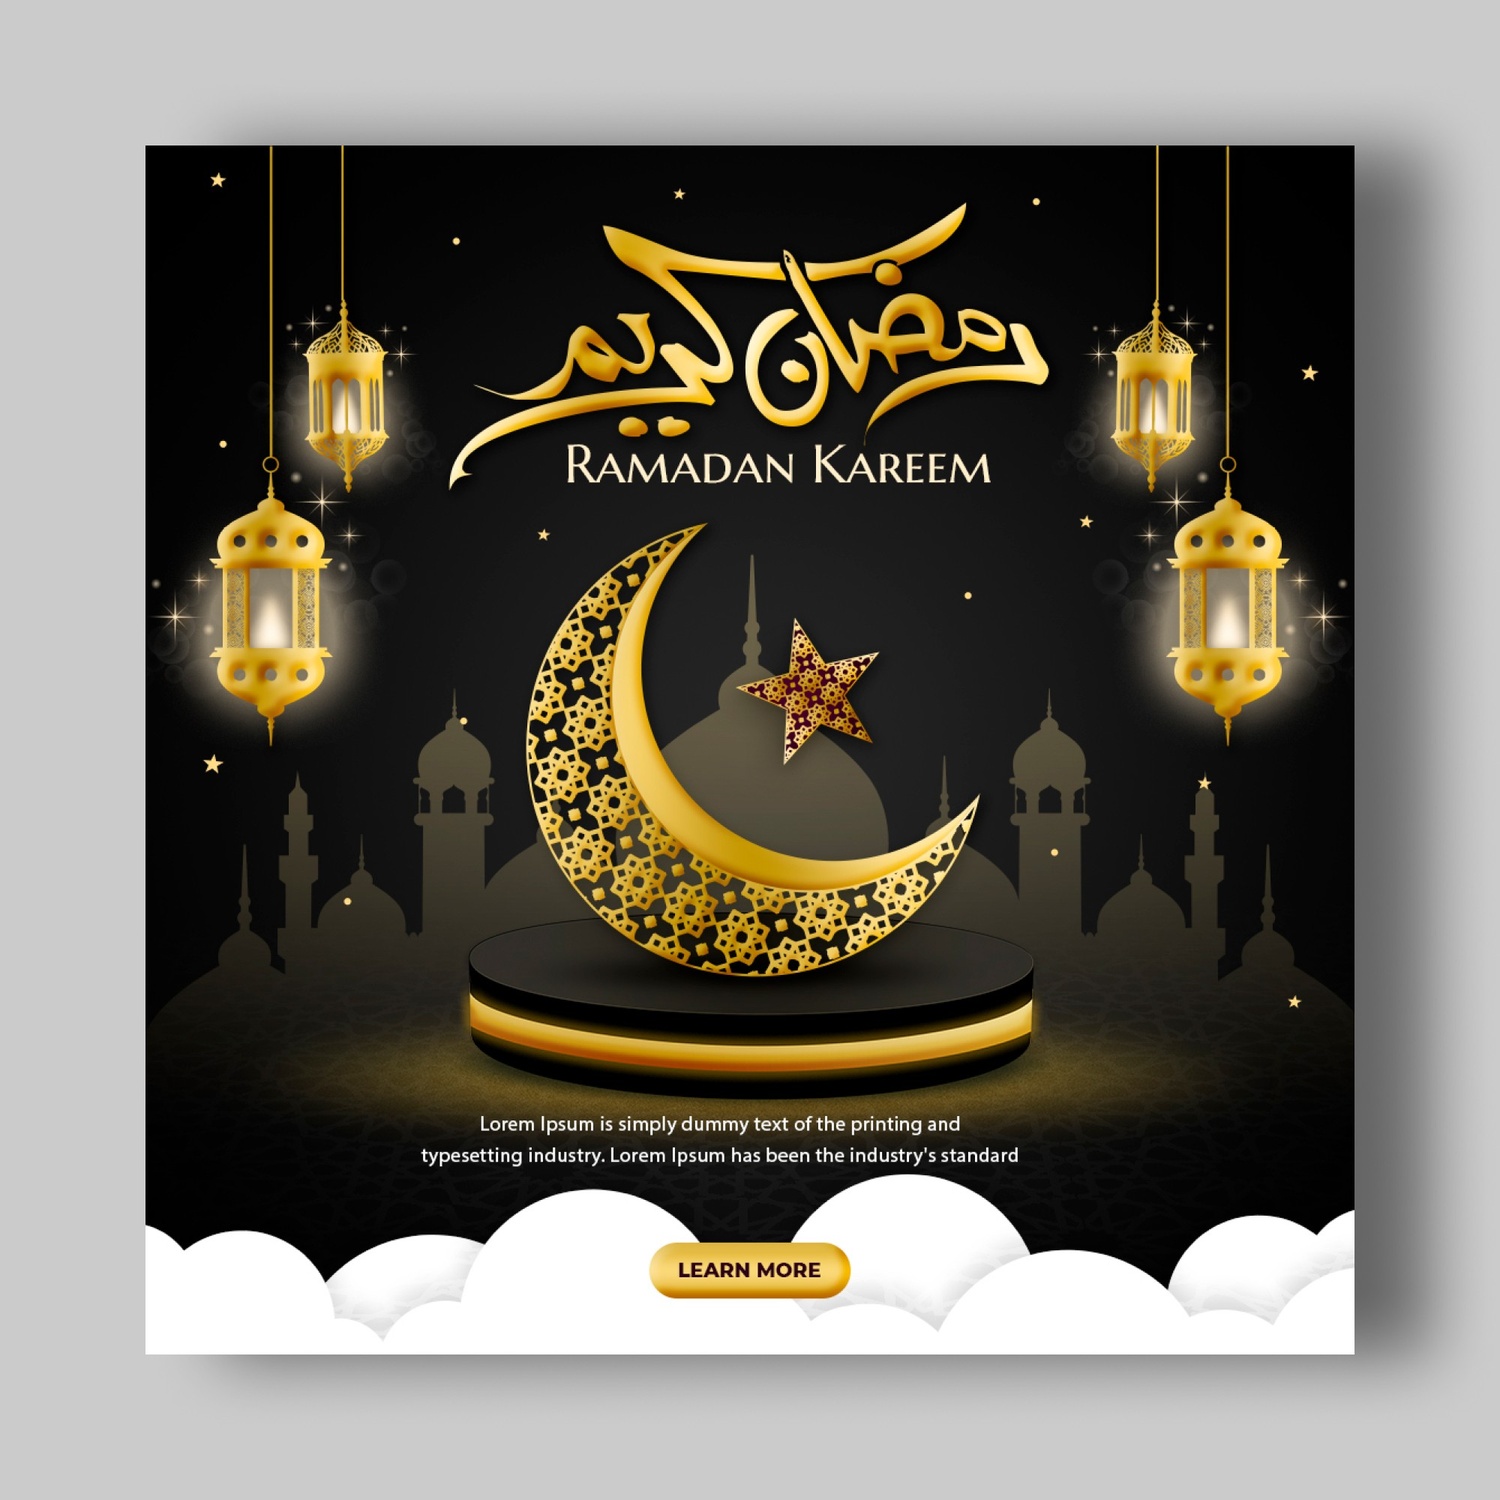 Ramadan Mubarak Social Media Banner Design Template social media post , banner, facebook post, instagaram, twitter social media post, ramadan post, social post , banner, poster, preview image.